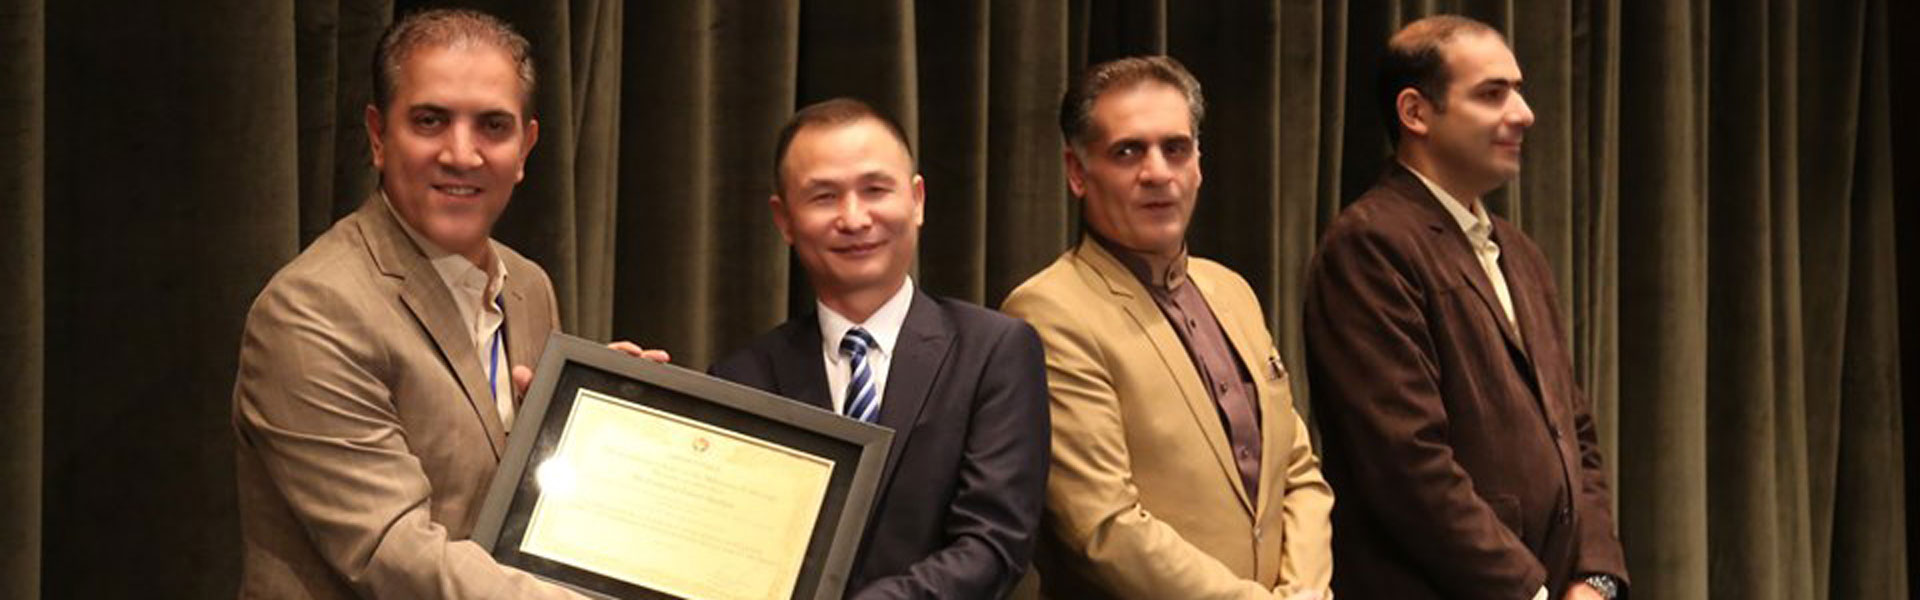 فرهود زعفری هشجین موفق به کسب دکترای افتخاری از دانشگاه ژاپن